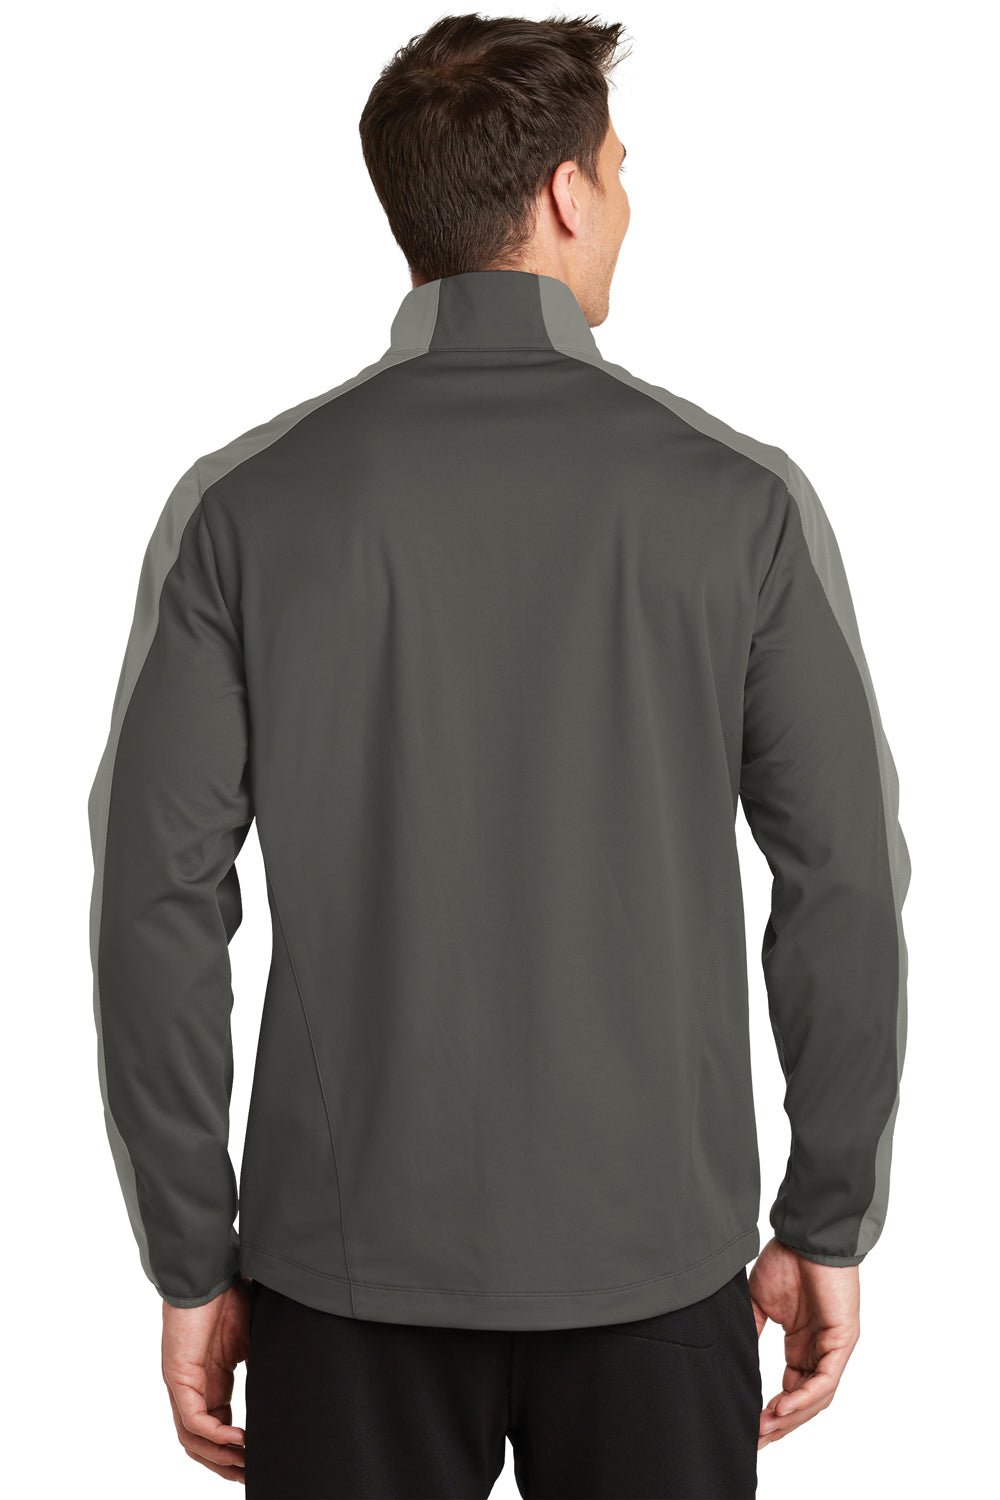 Port Authority J718 Mens Active Wind & Water Resistant Full Zip Jacket Grey Steel/Grey Back